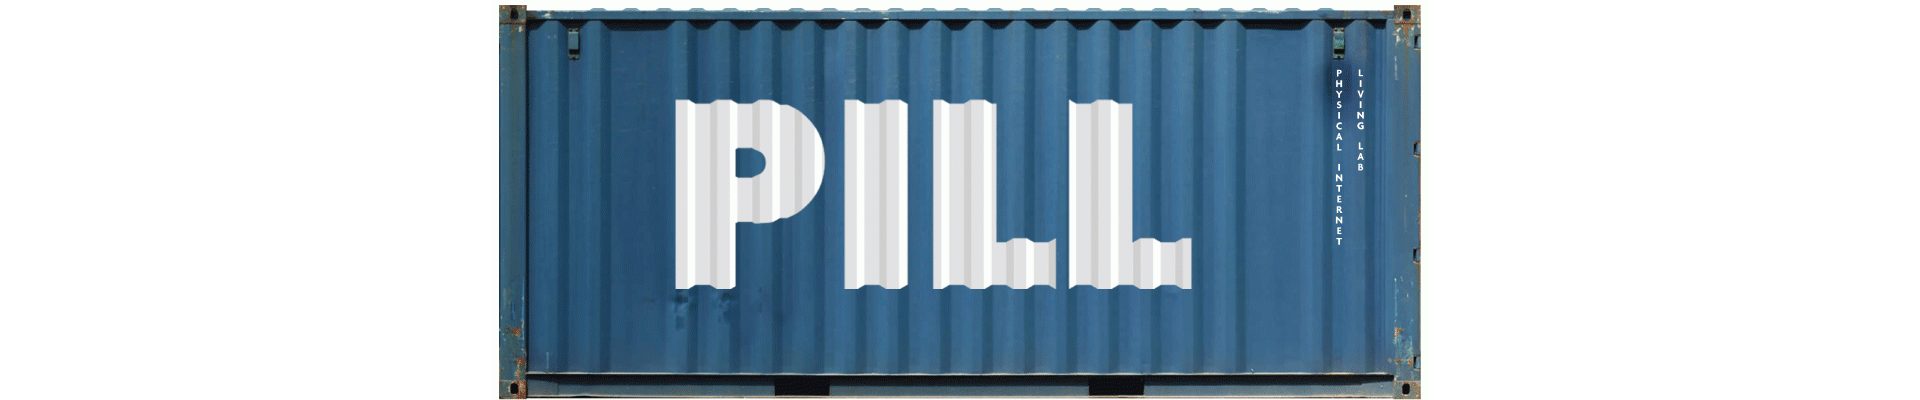 PILL logo